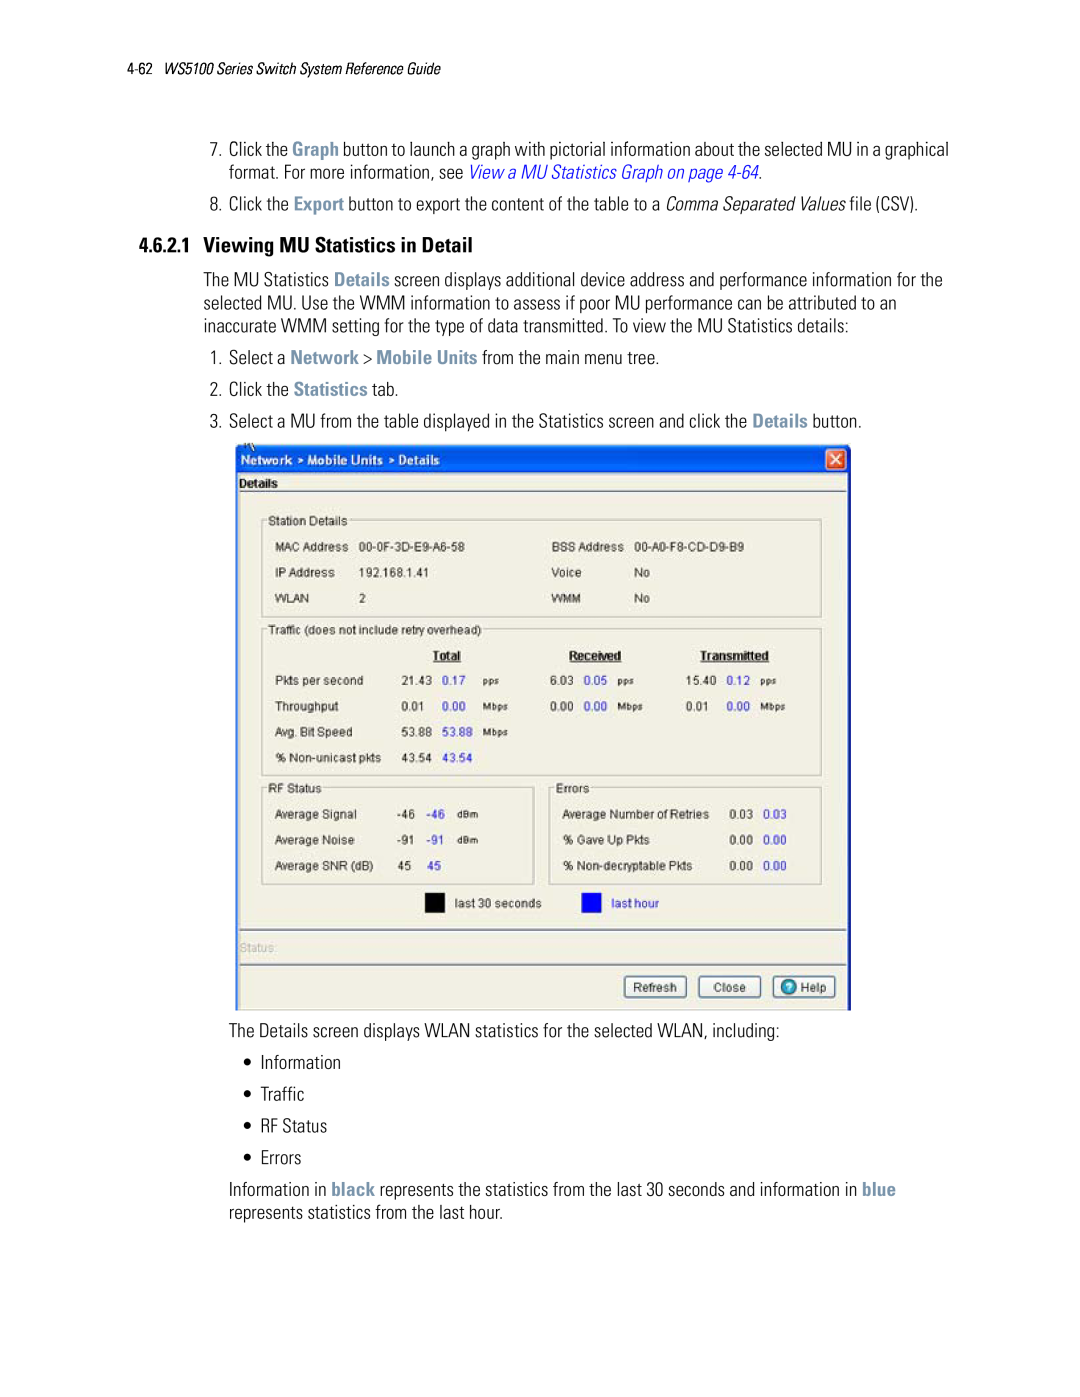 Motorola WS5100 manual 4.6.2.1Viewing MU Statistics in Detail 